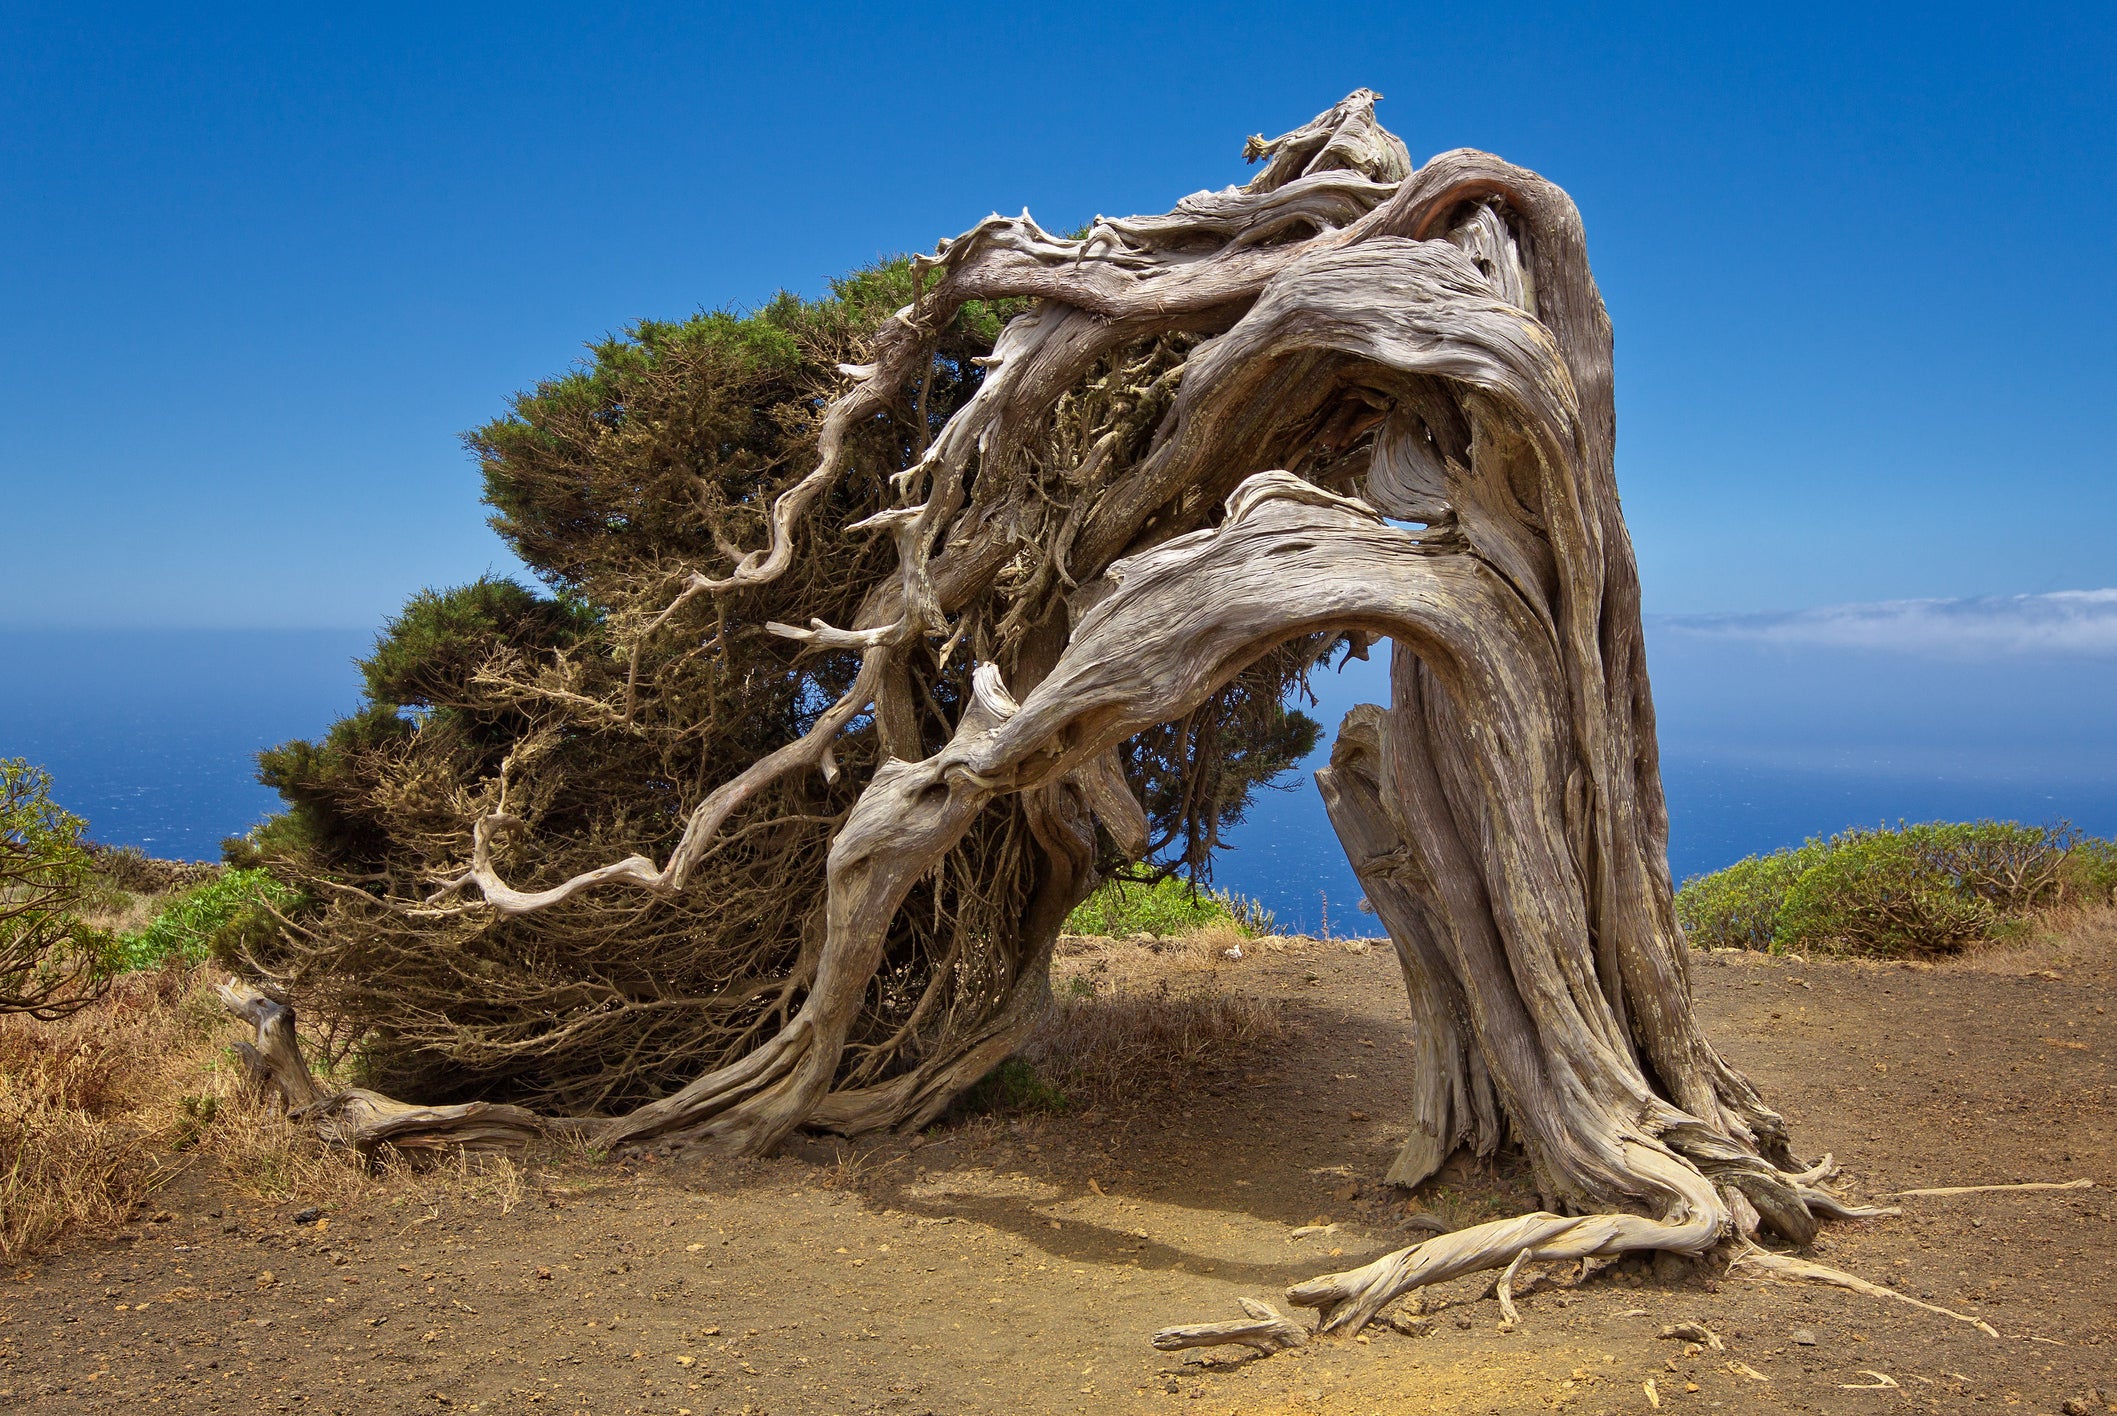 The unique sabina tree, native to El Hierro